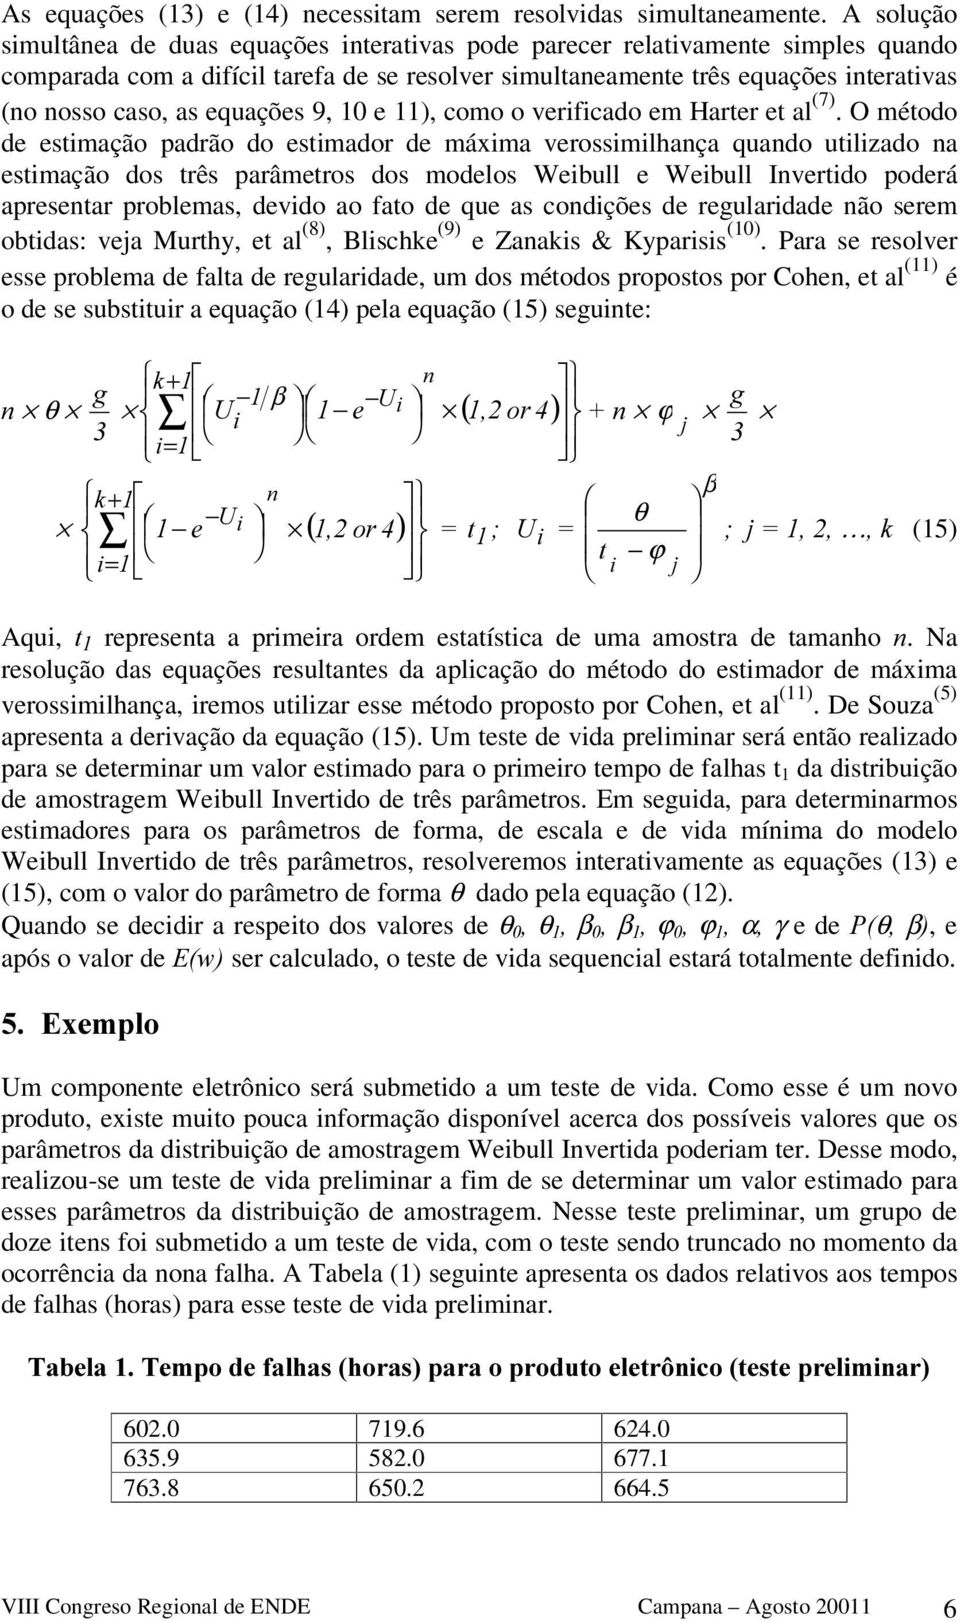 equações 9, 10 e 11), como o verificado em Harter et al (7).